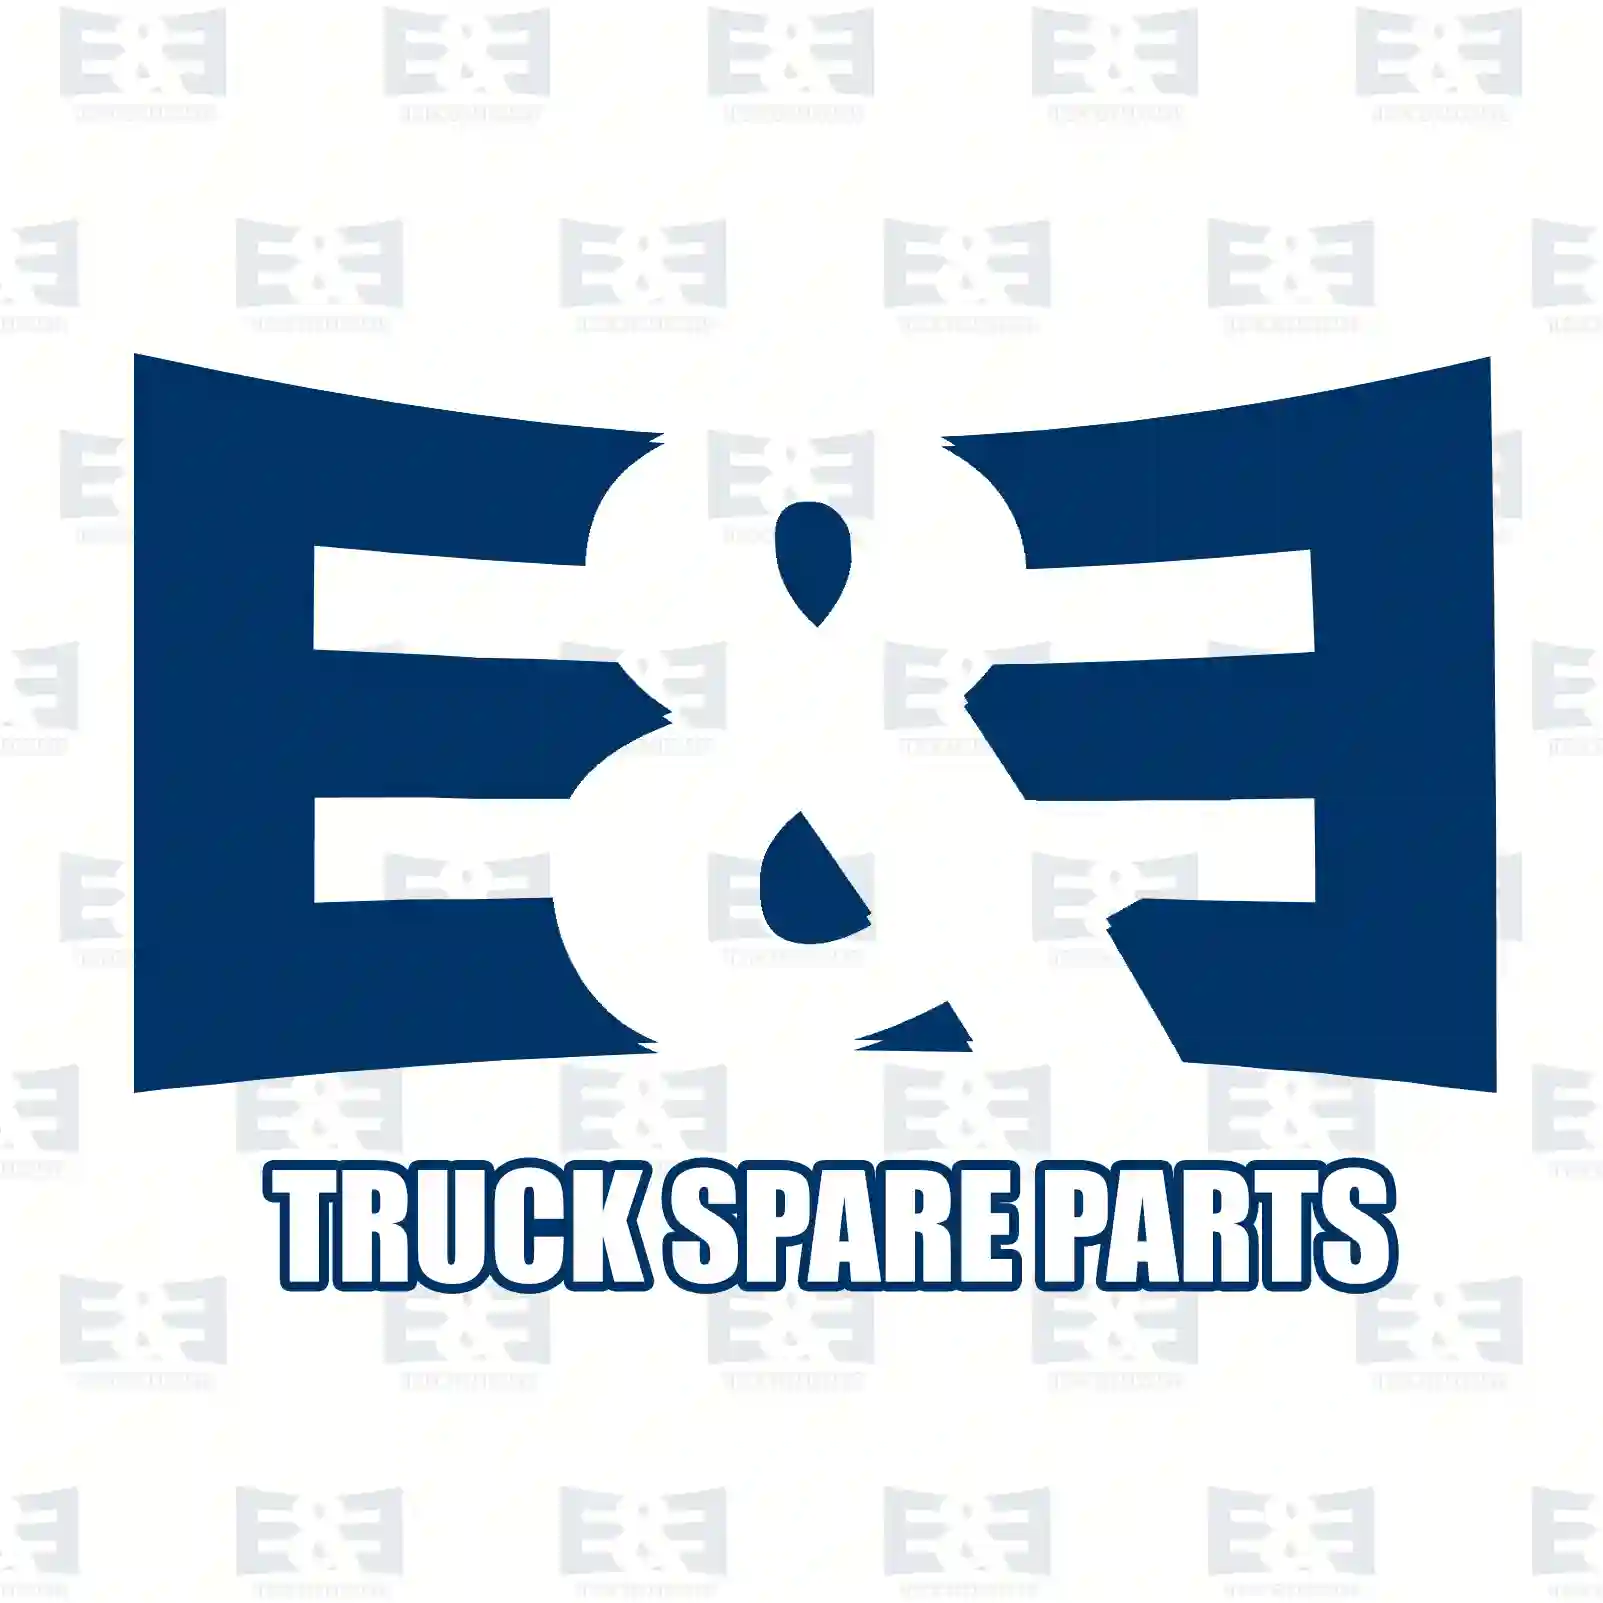 Bumper, center, 2E2289777, 7401GY, 7401NP, 735431214, 735443525, 7401GY, 7401NP ||  2E2289777 E&E Truck Spare Parts | Truck Spare Parts, Auotomotive Spare Parts Bumper, center, 2E2289777, 7401GY, 7401NP, 735431214, 735443525, 7401GY, 7401NP ||  2E2289777 E&E Truck Spare Parts | Truck Spare Parts, Auotomotive Spare Parts